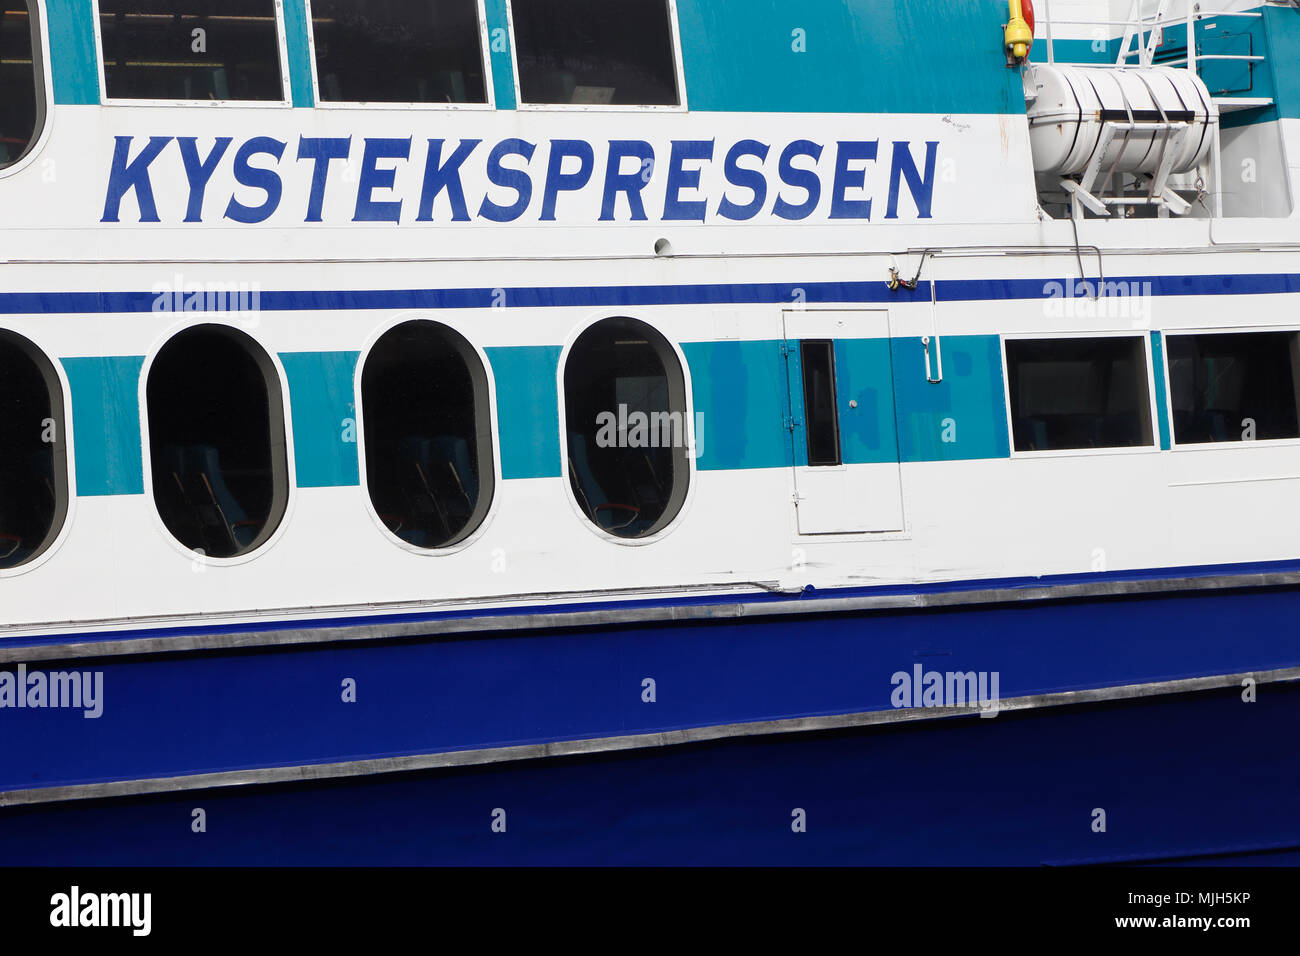 Trondheim, Norvège - 30 septembre 2016 : un petit navire à passagers tyransport public en service pour Kystekspressen costal à Trondheim. Banque D'Images